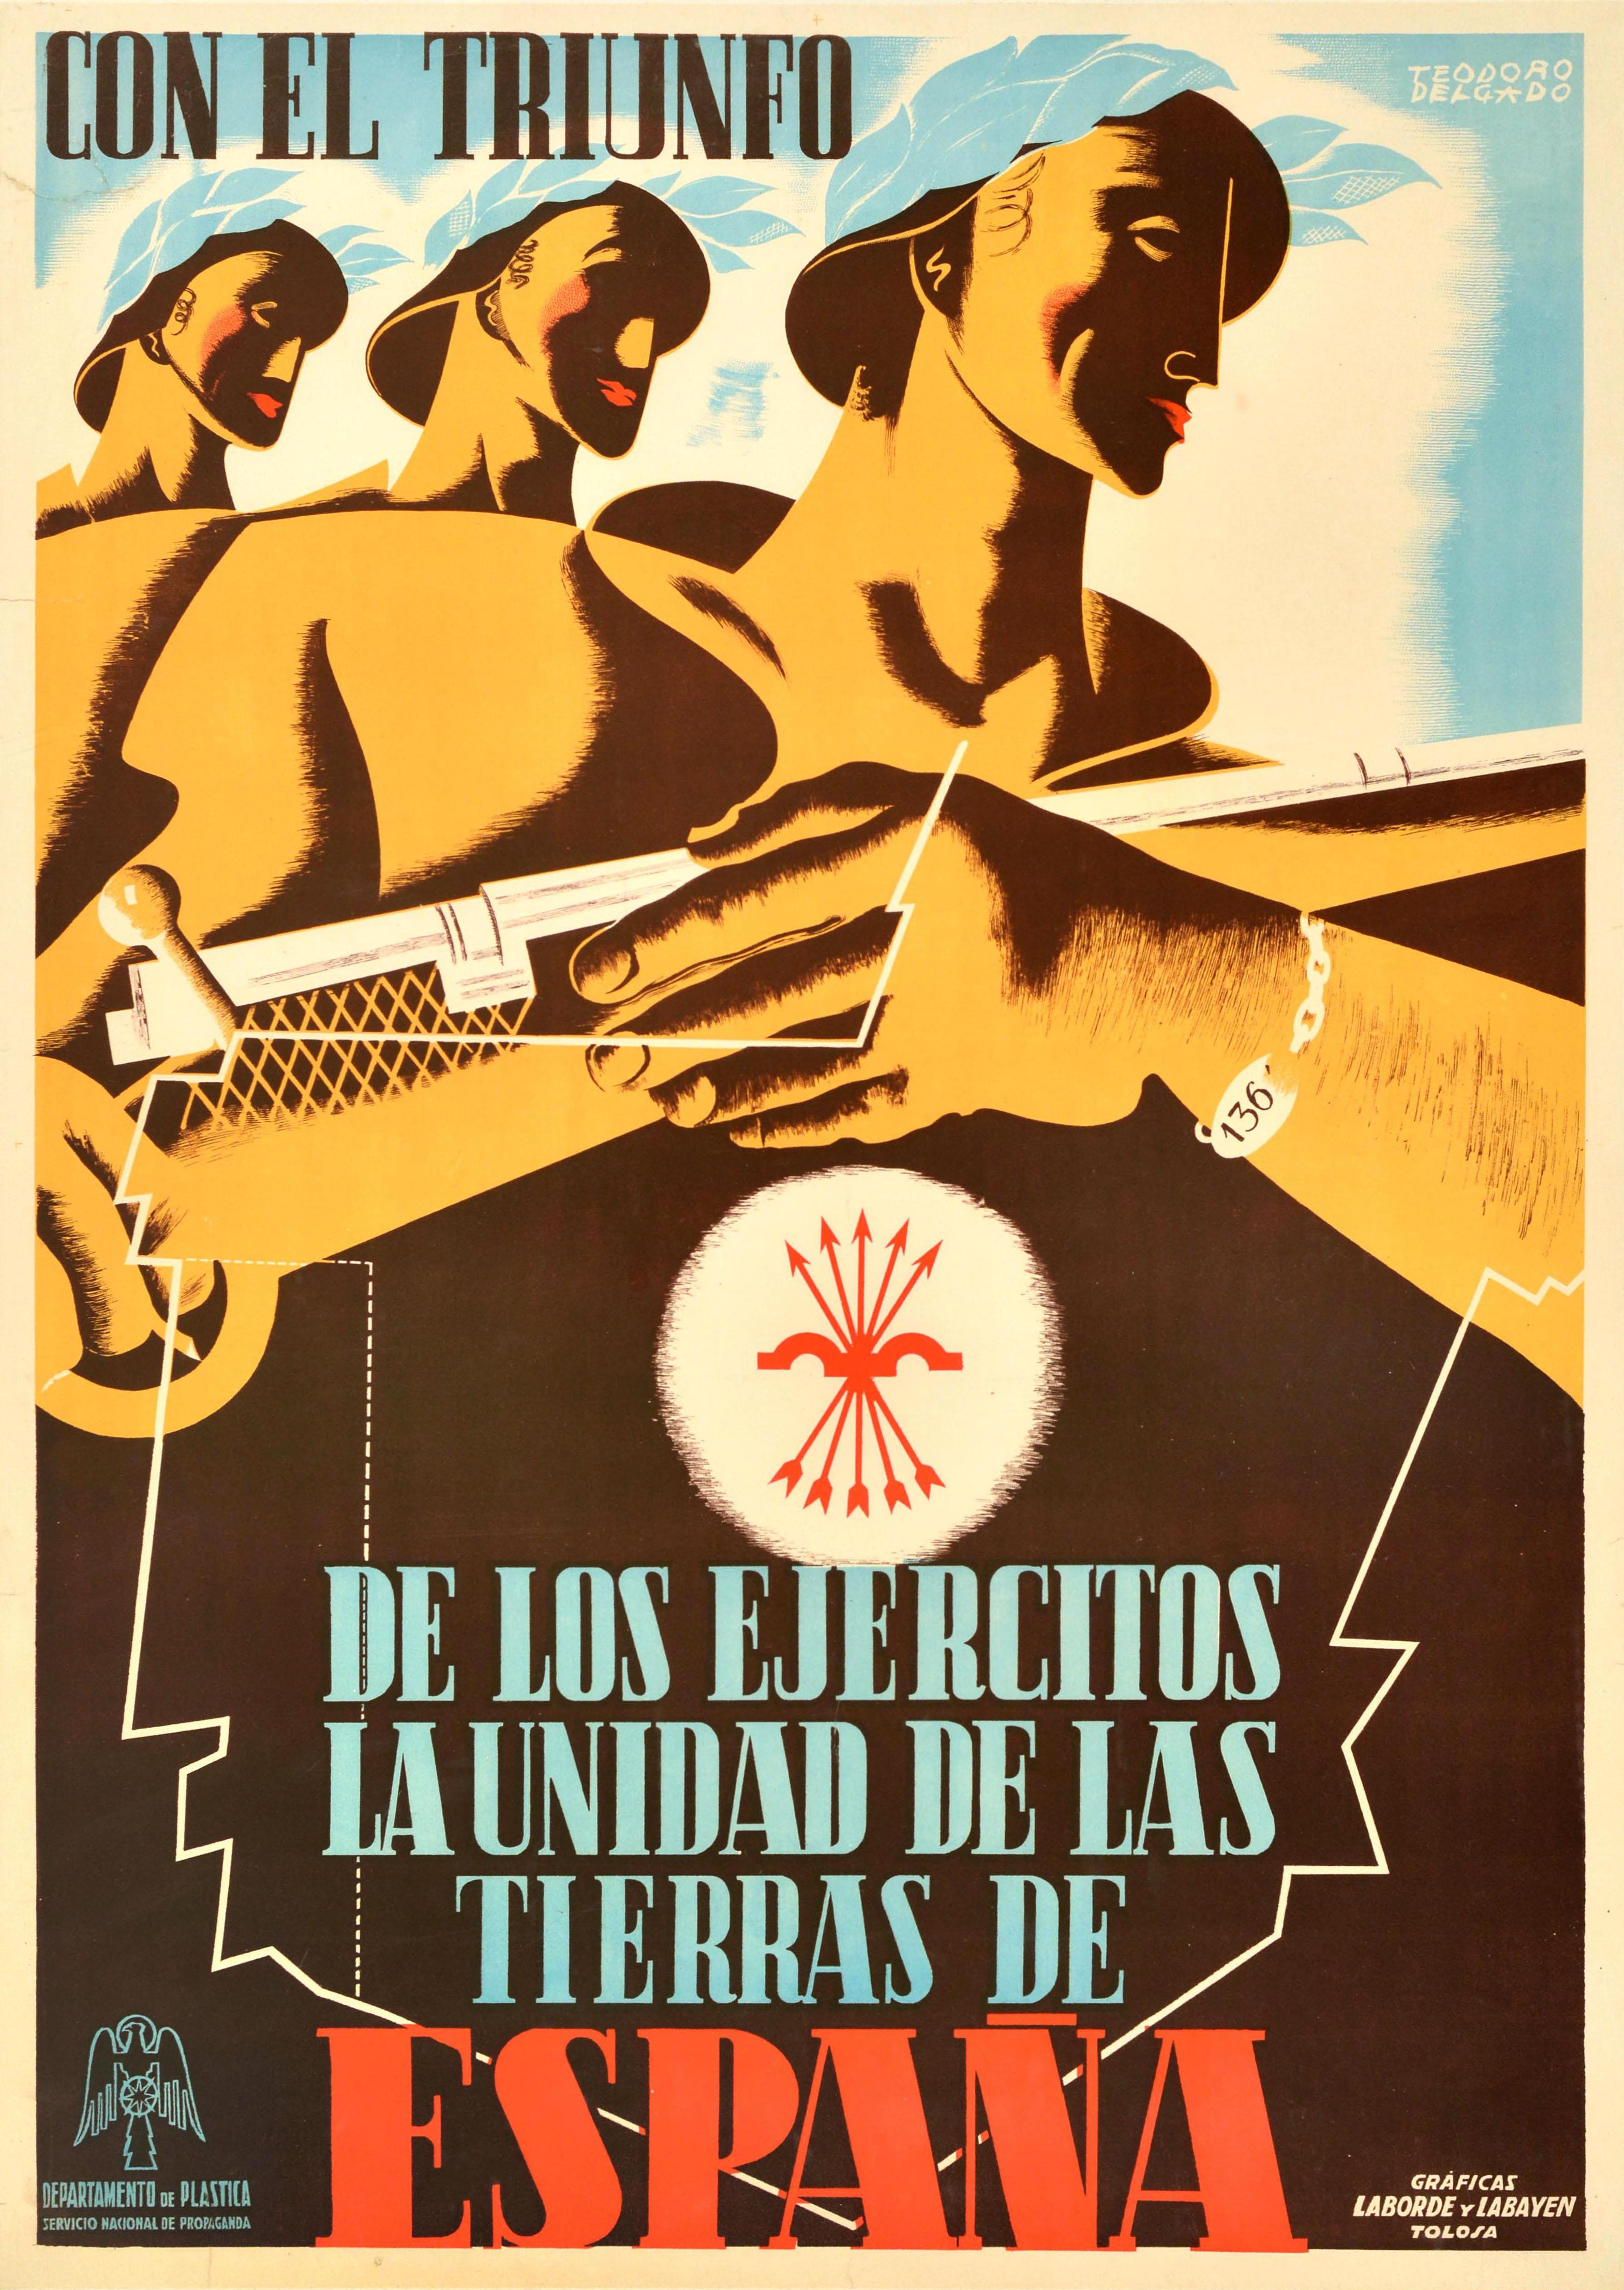 Teodoro Delgado Print - Original Vintage Spanish Civil War Poster Con El Triunfo Triumph Of Armies Unity